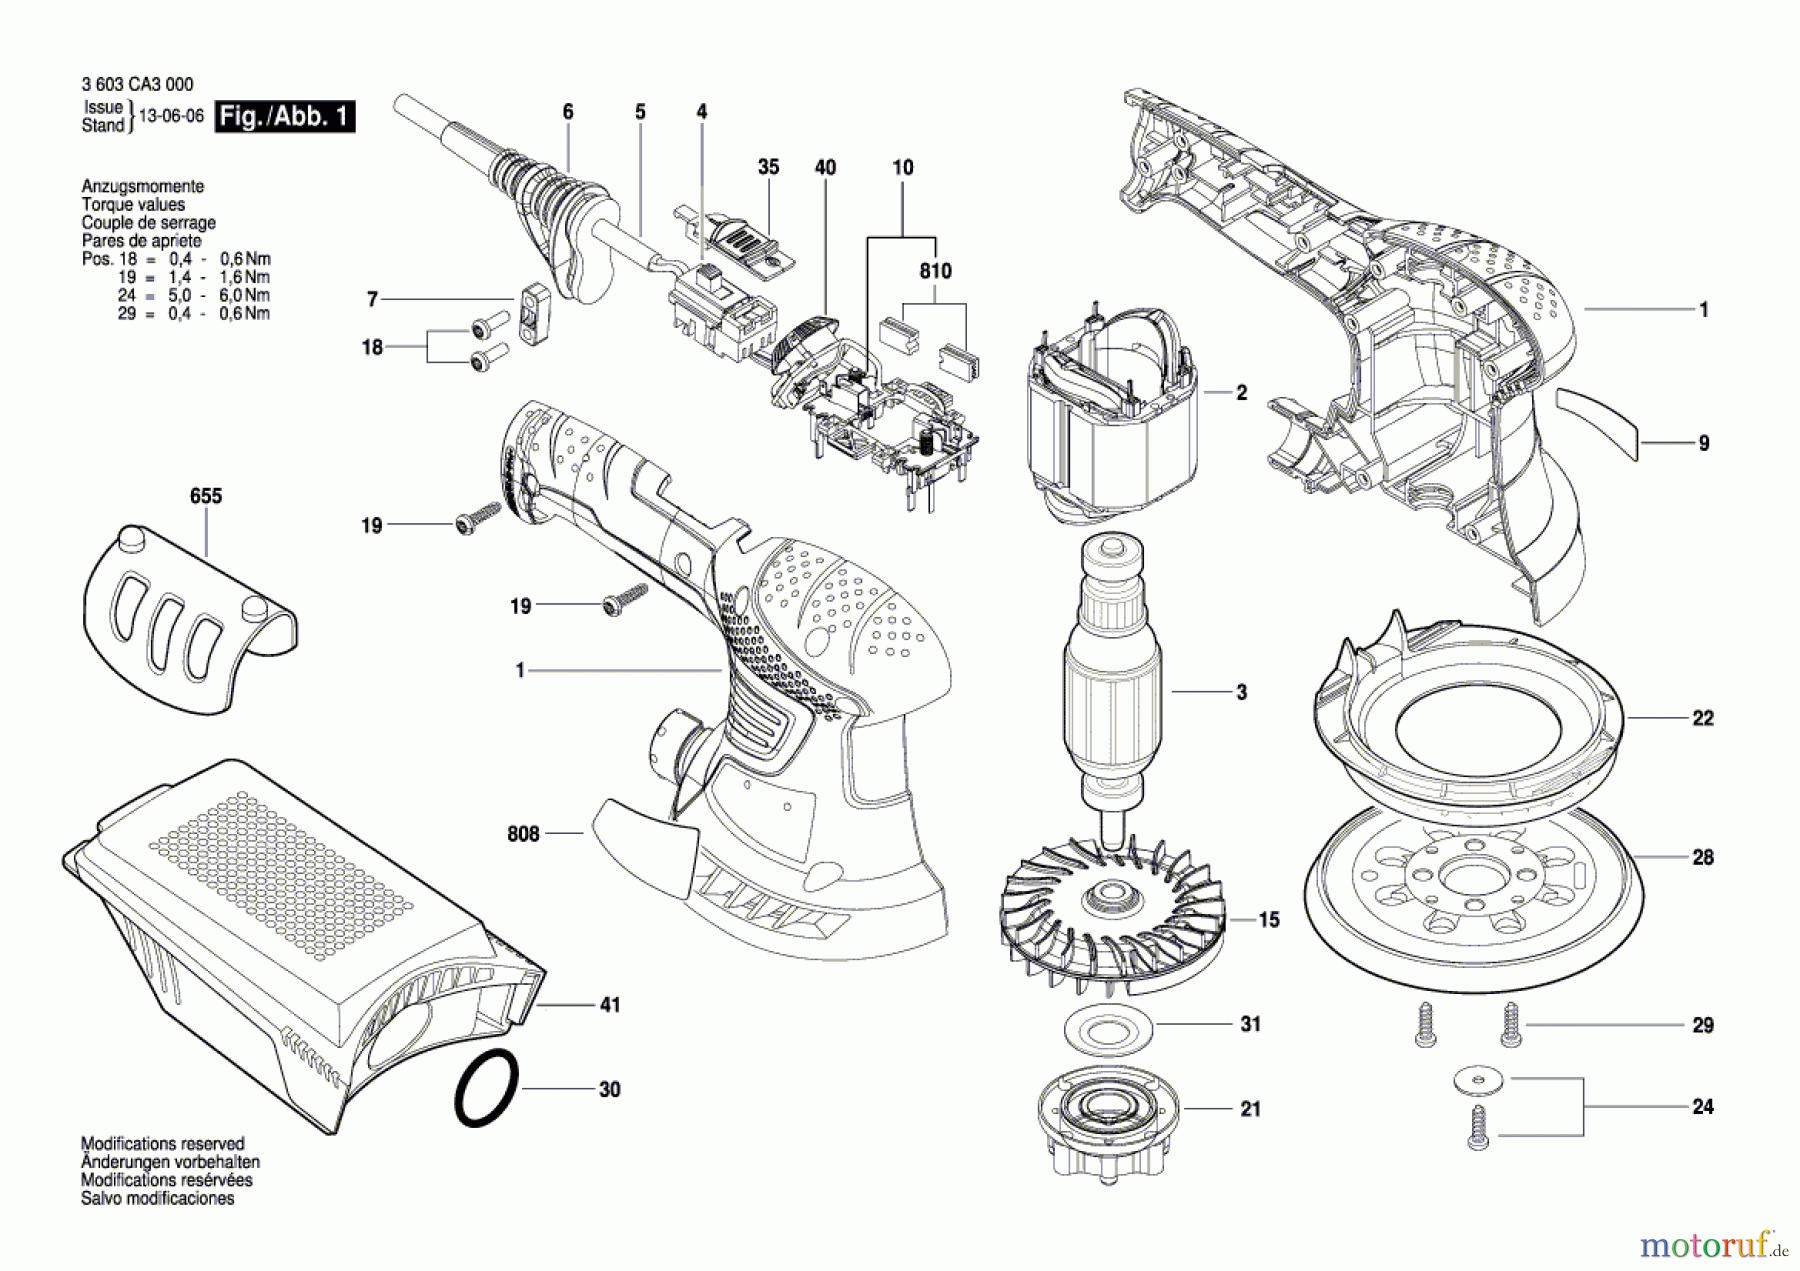  Bosch Werkzeug Exzenterschleifer PEX 300 AE Seite 1